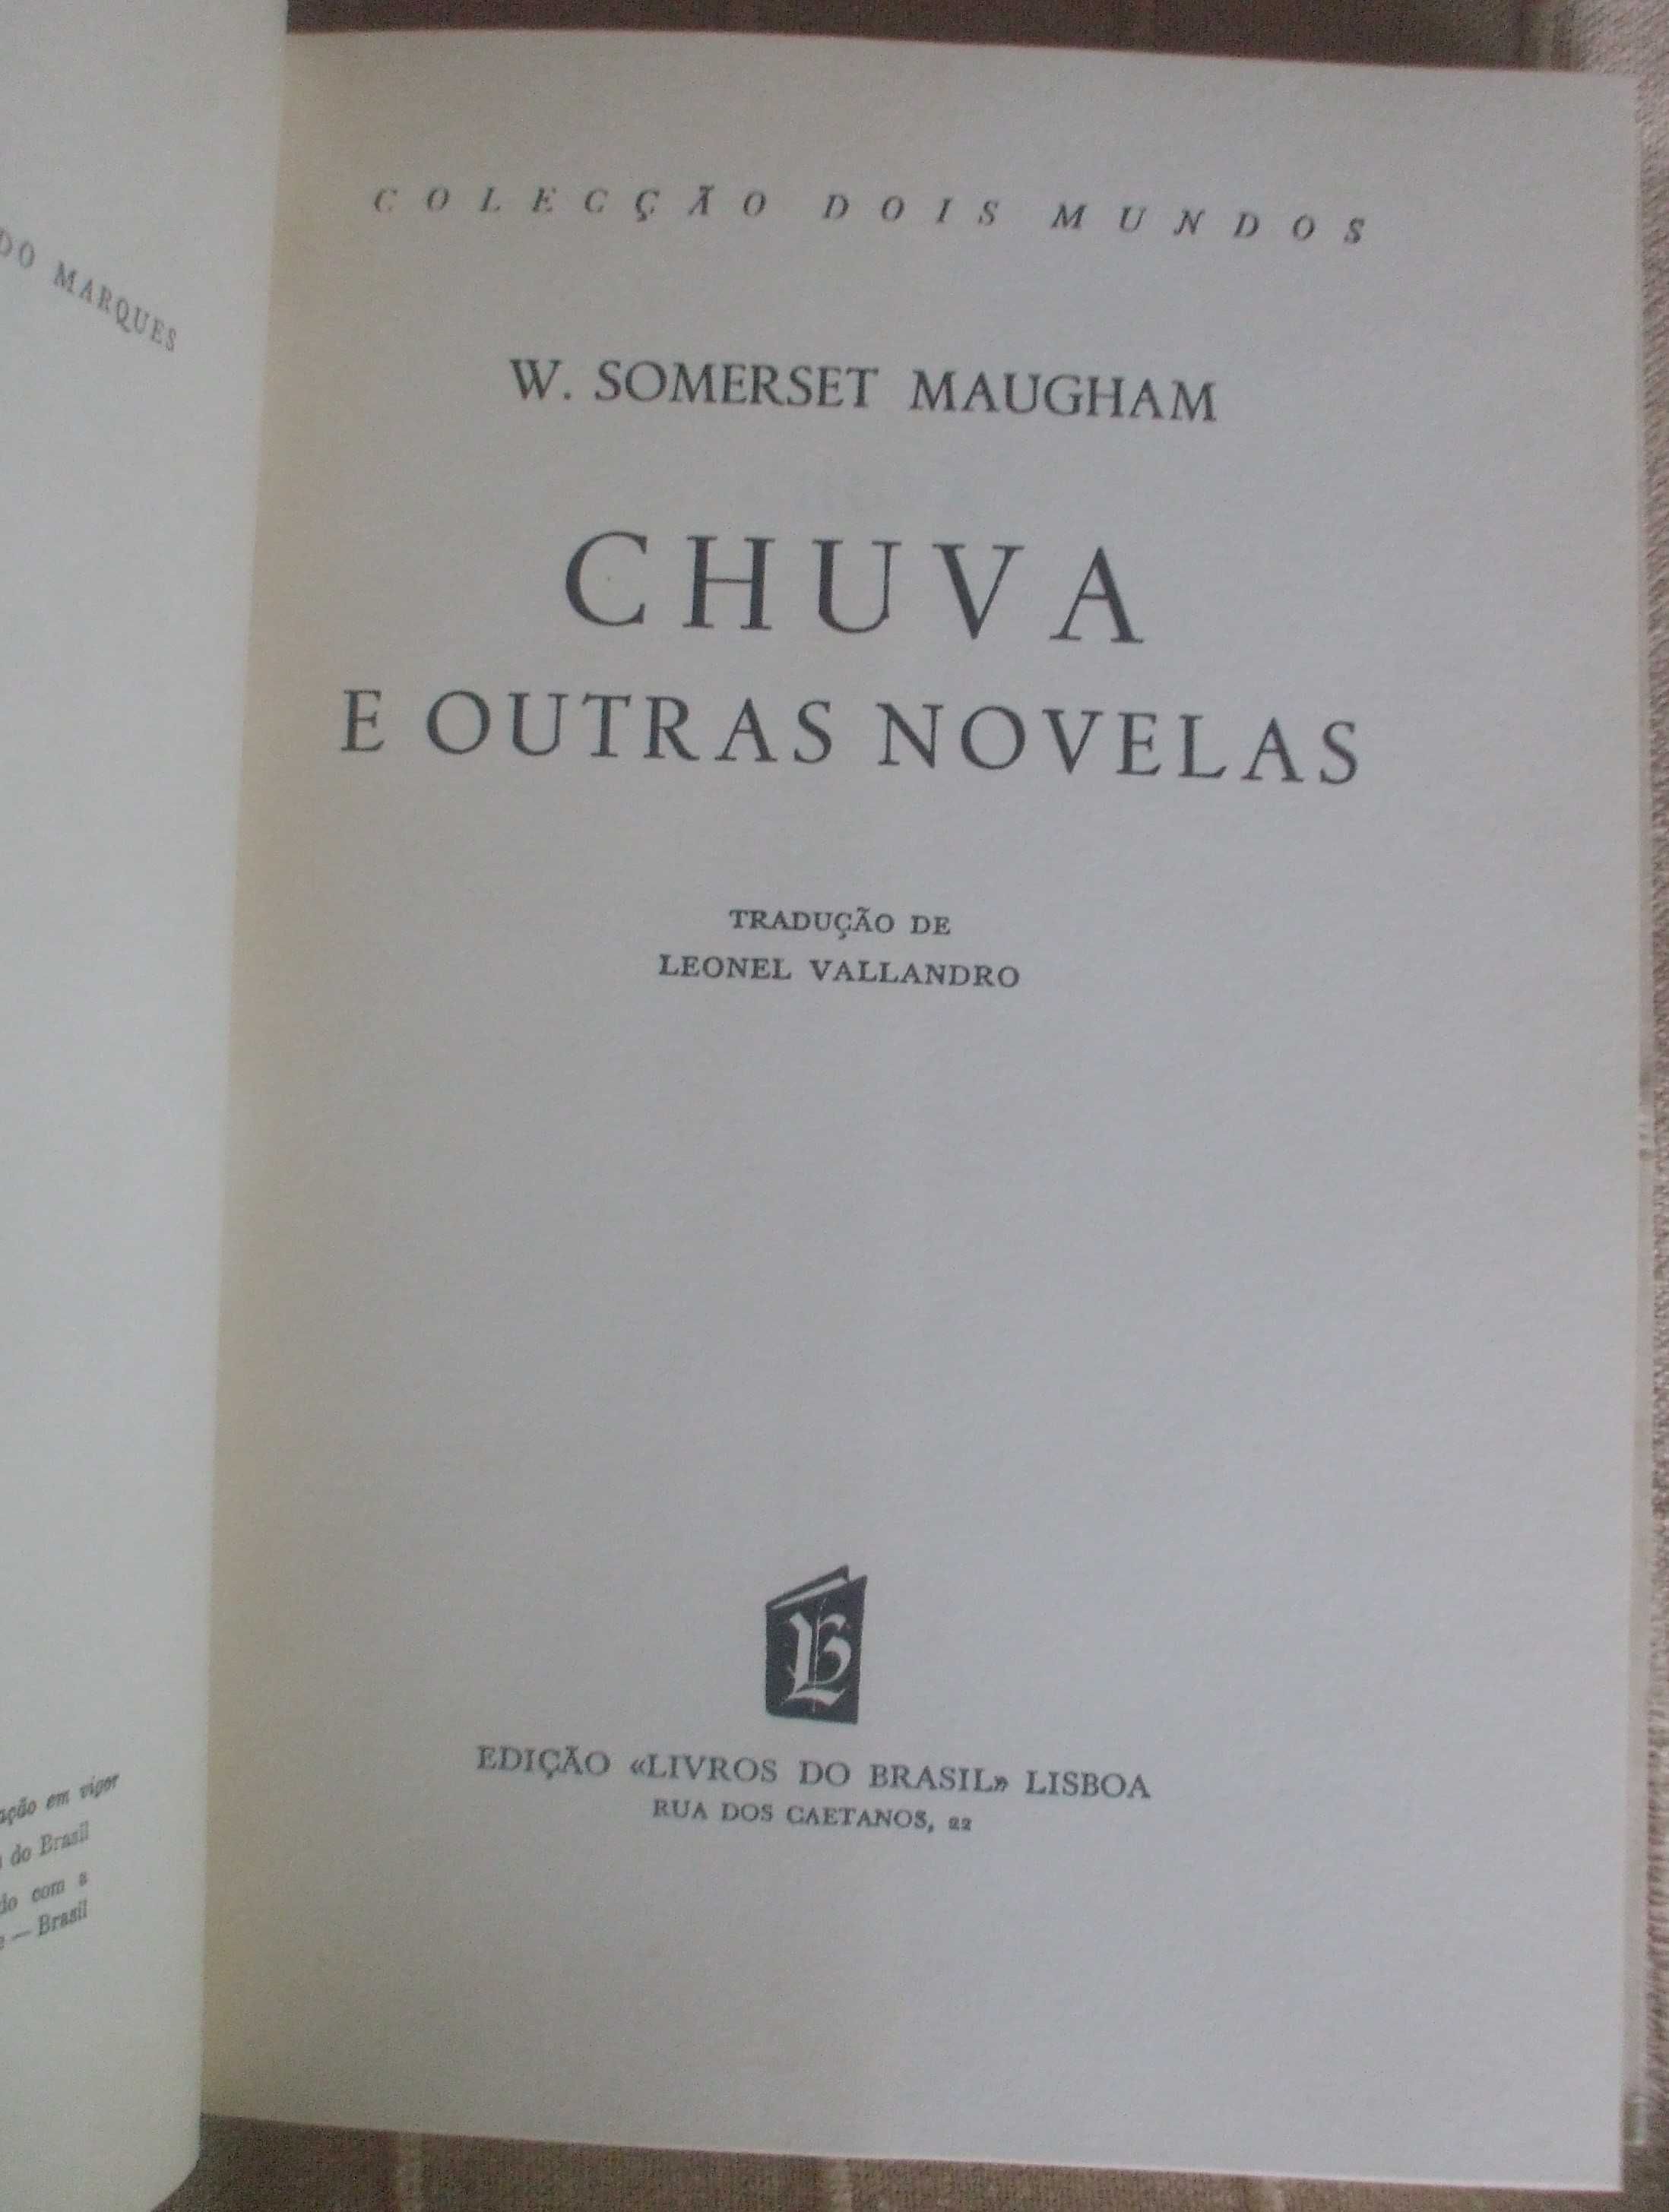 Chuva e outras novelas, W. Somerset Maugham